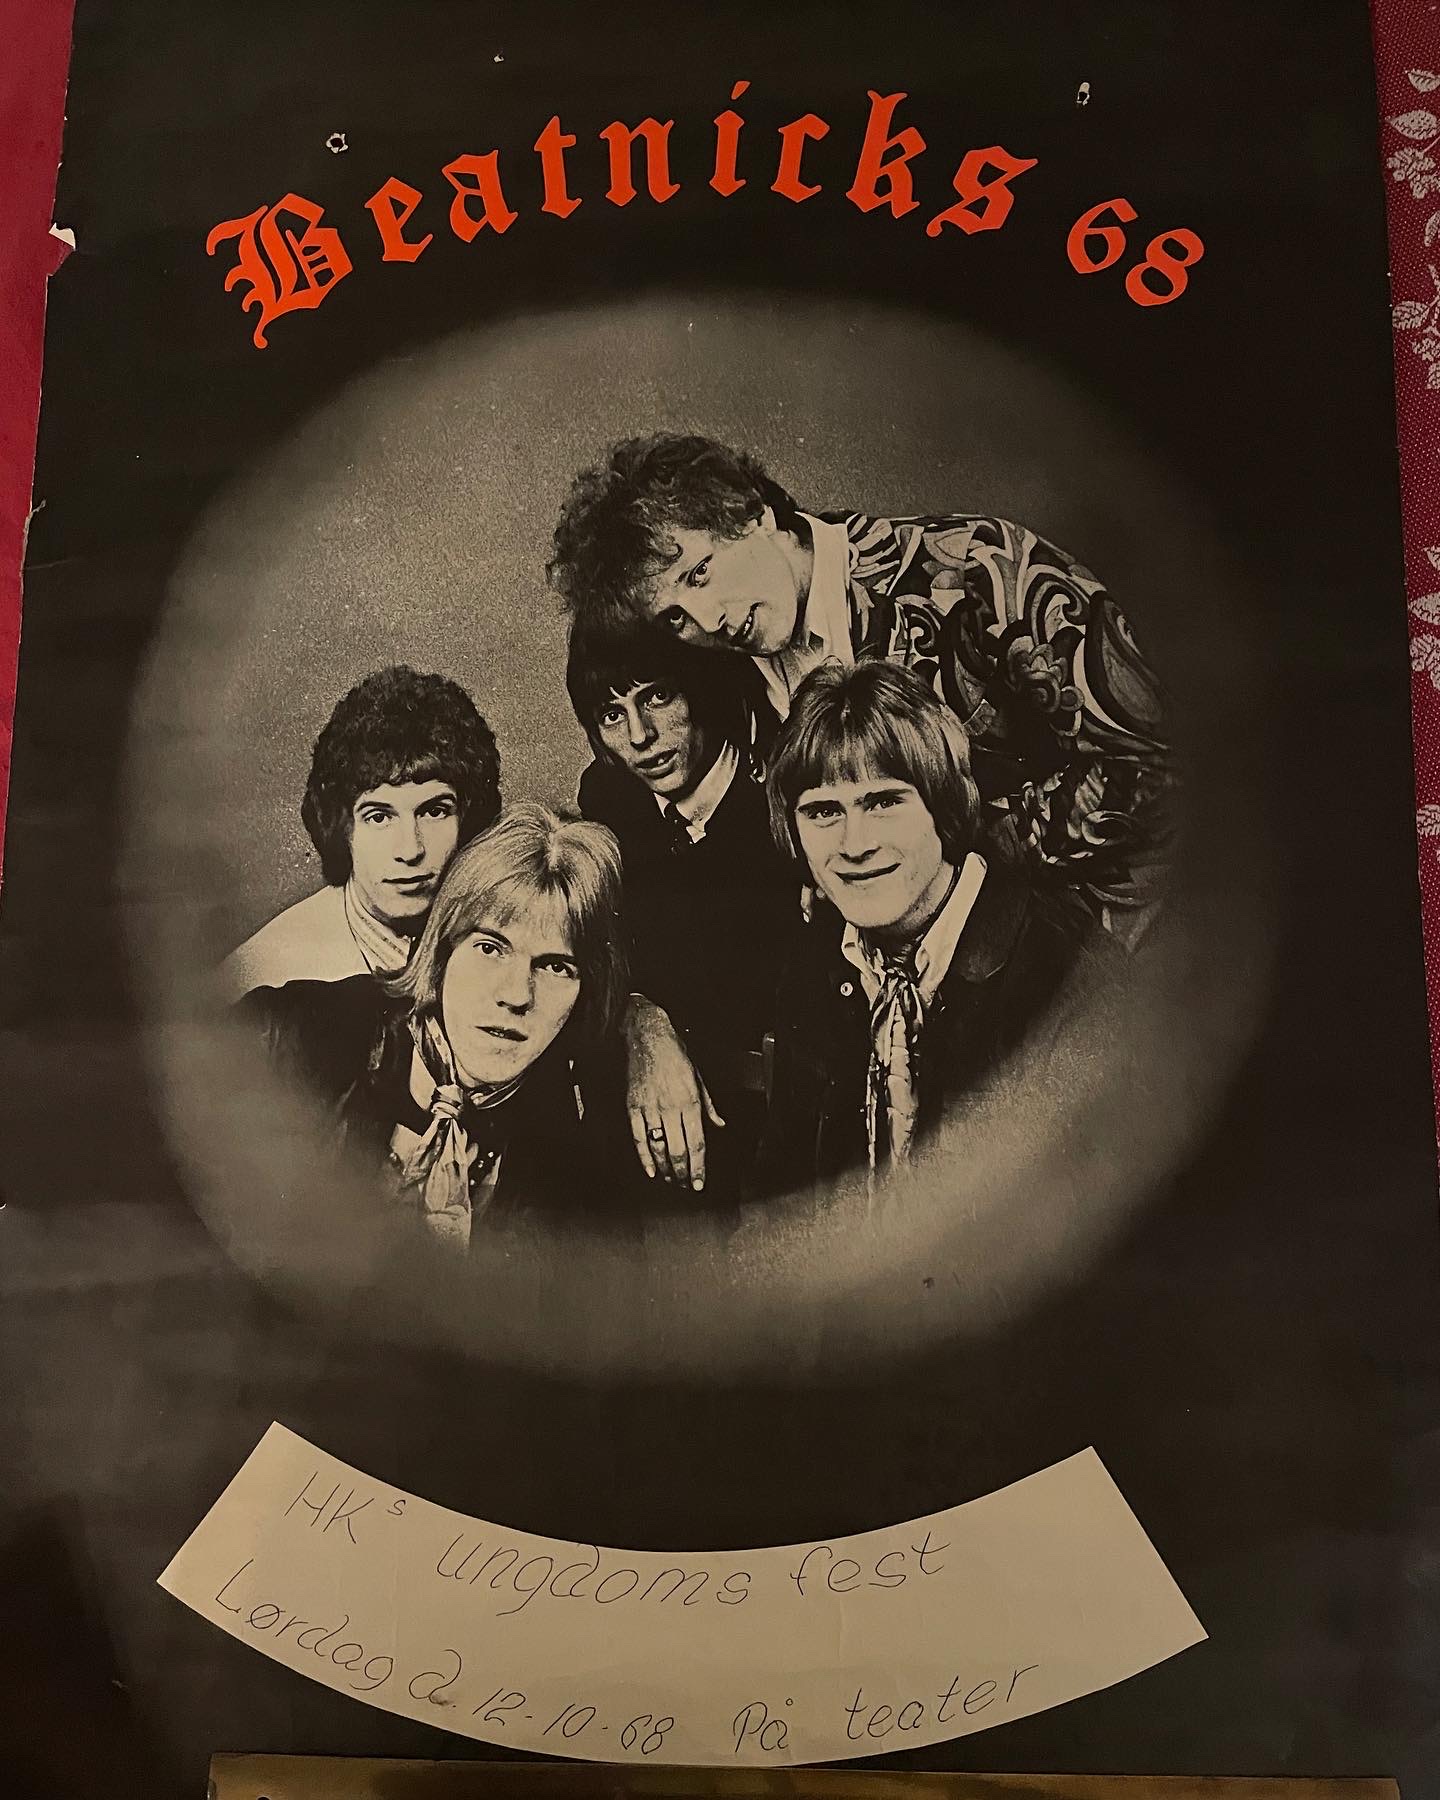 retro plakat fra 1968 (Beatnicks), pris 200 kr